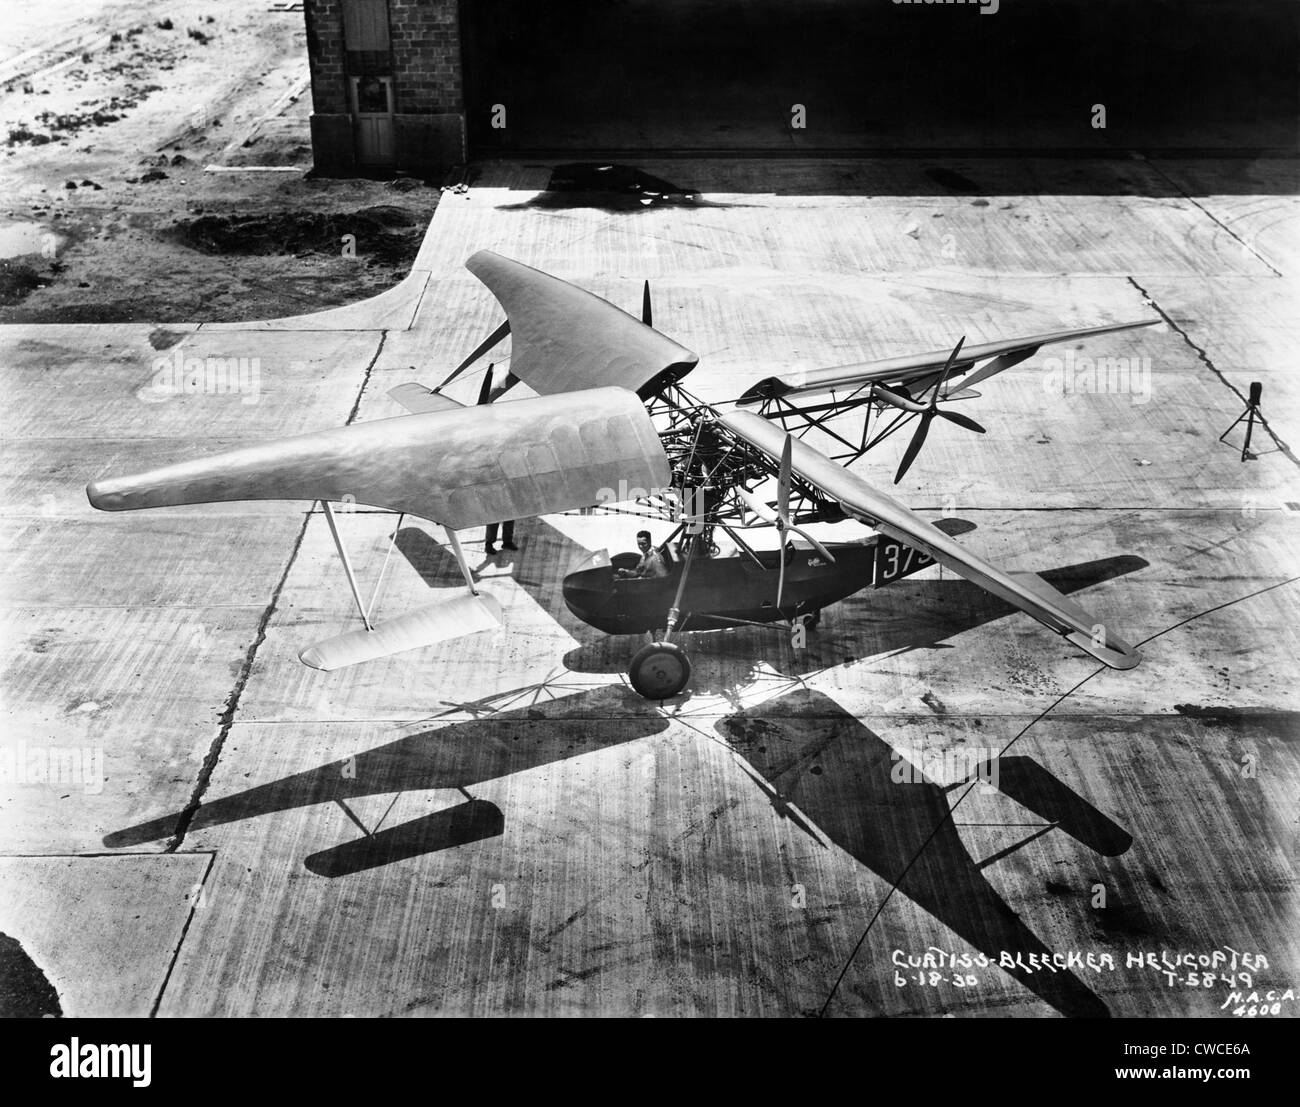 Début de l'hélicoptère. Curtiss plus funeste hélicoptère à Langley Air Force Base en juin 1930. Il a d'énormes rotors d'ailes attaché Banque D'Images